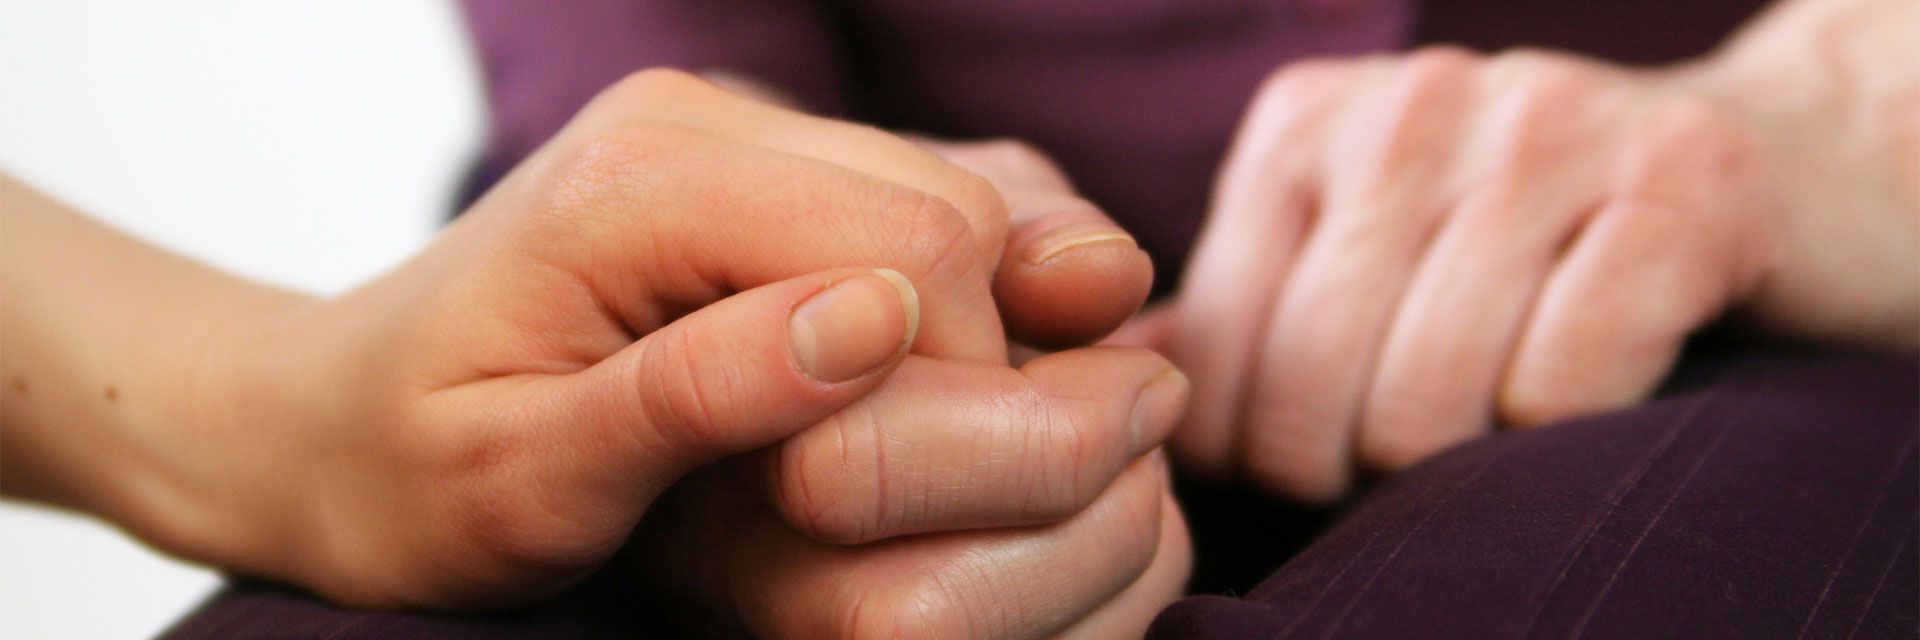 Foto: Die geröteten Hände einer Frau liegen sichtbar verkrampft auf ihrem Schoß. Eine andere Frau hält ihre Hand.